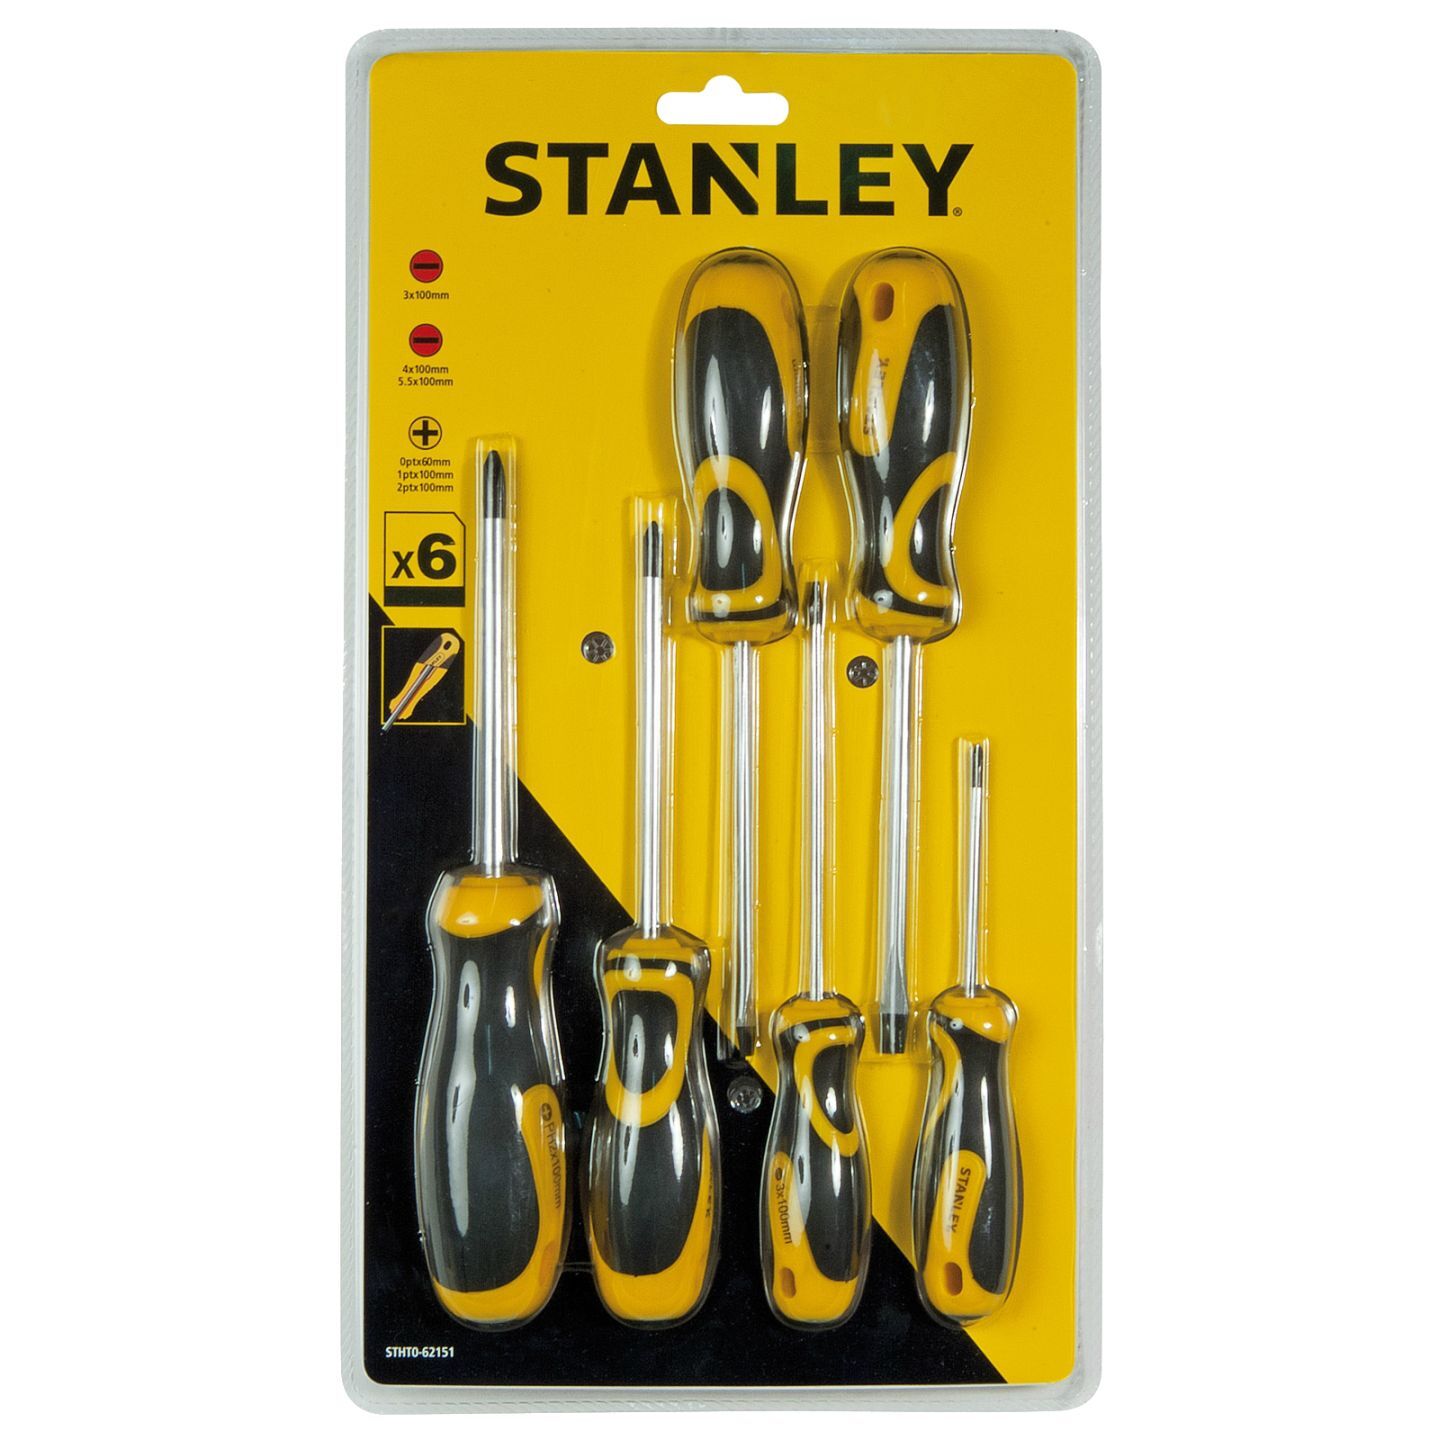 Stanley 62151 6 Piece Screwdriver Set